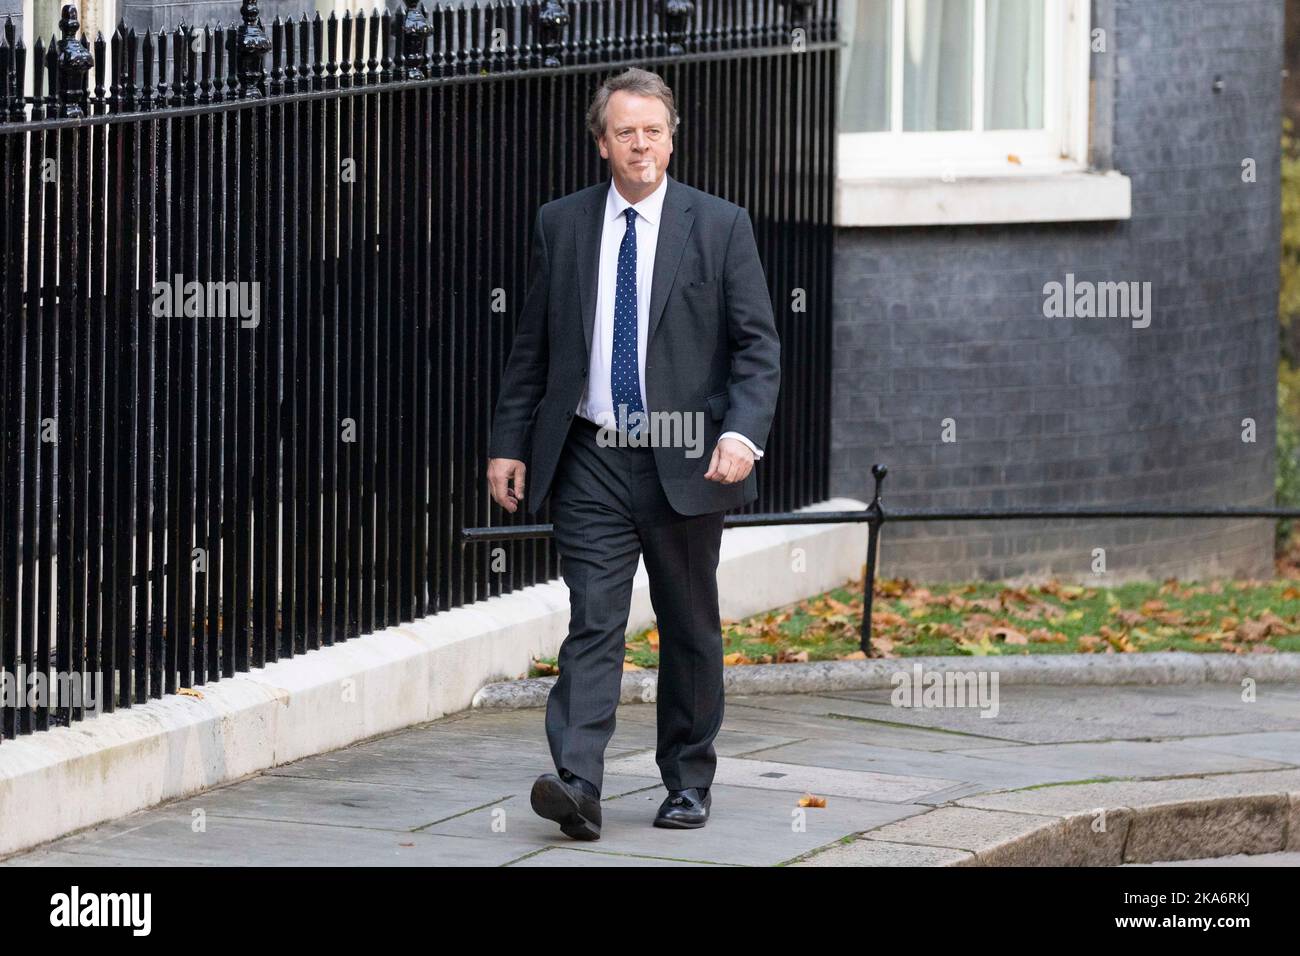 Mel Stride arrive à Downing Street cet après-midi alors que le Premier ministre Rishi Sunak nomme son nouveau cabinet. Photo prise le 25th Oct 20 Banque D'Images